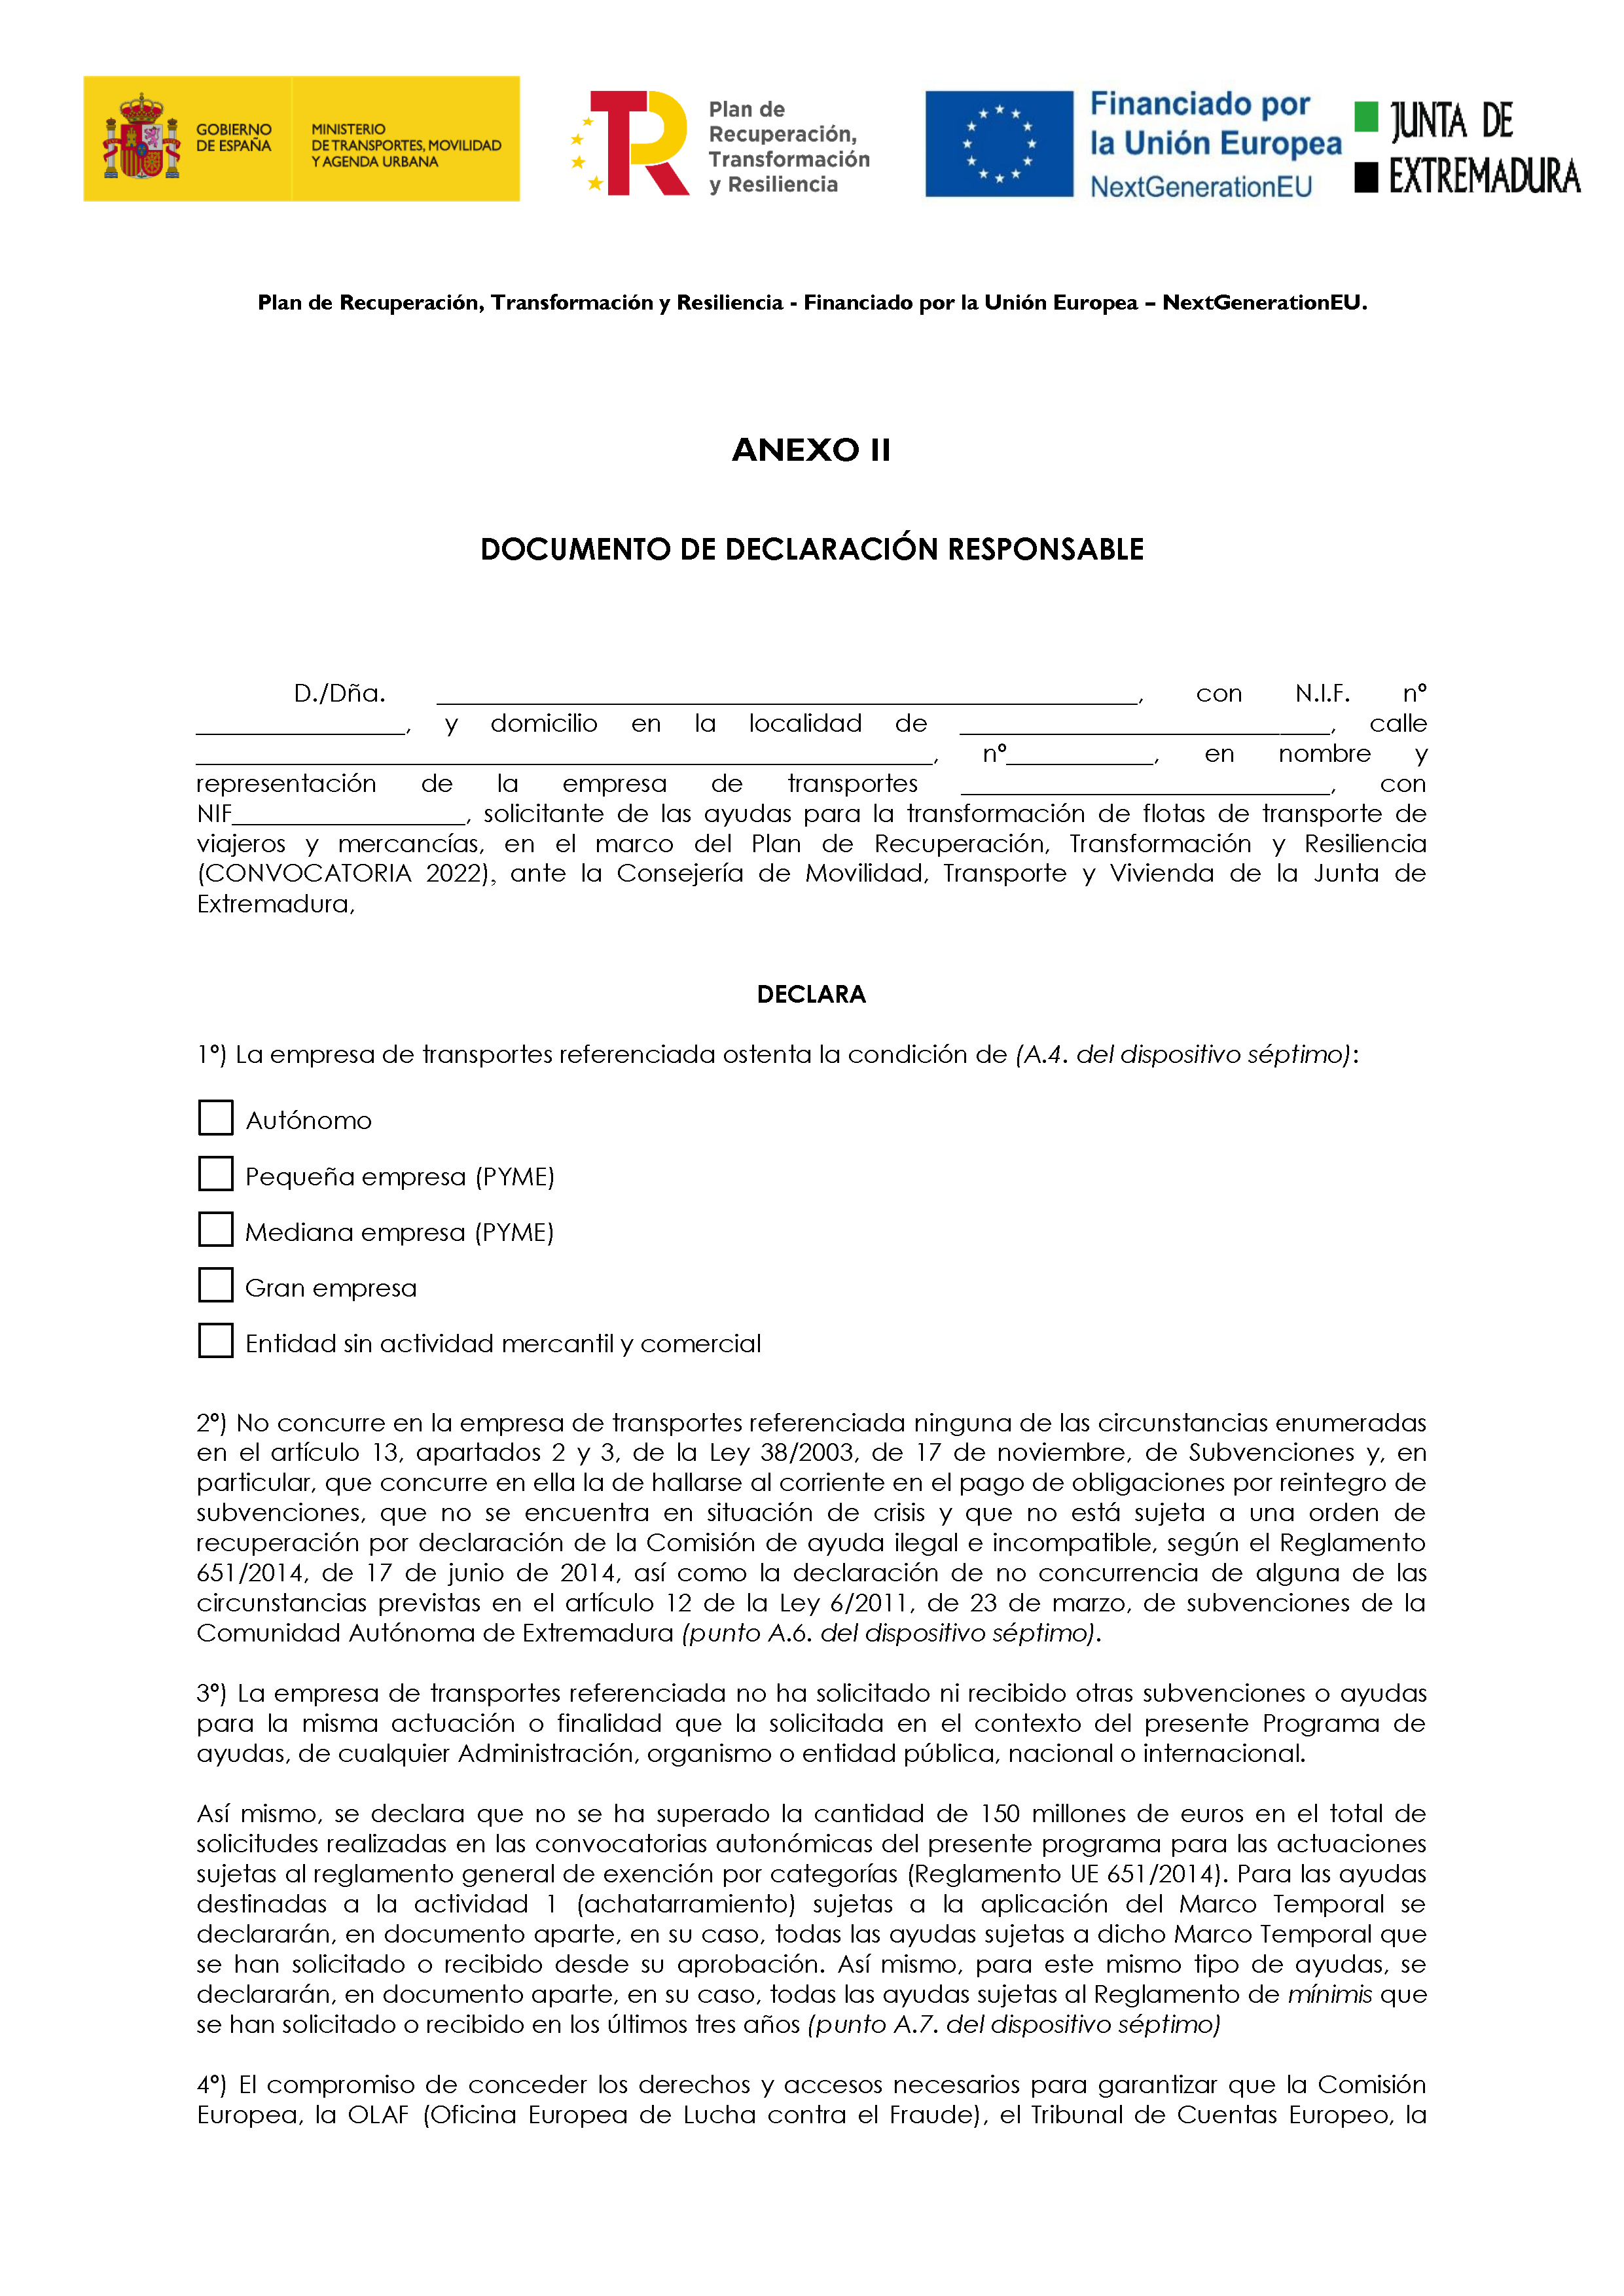 ANEXO II DOCUMENTO DE DECLARACION RESPONSABLE PAG. 1